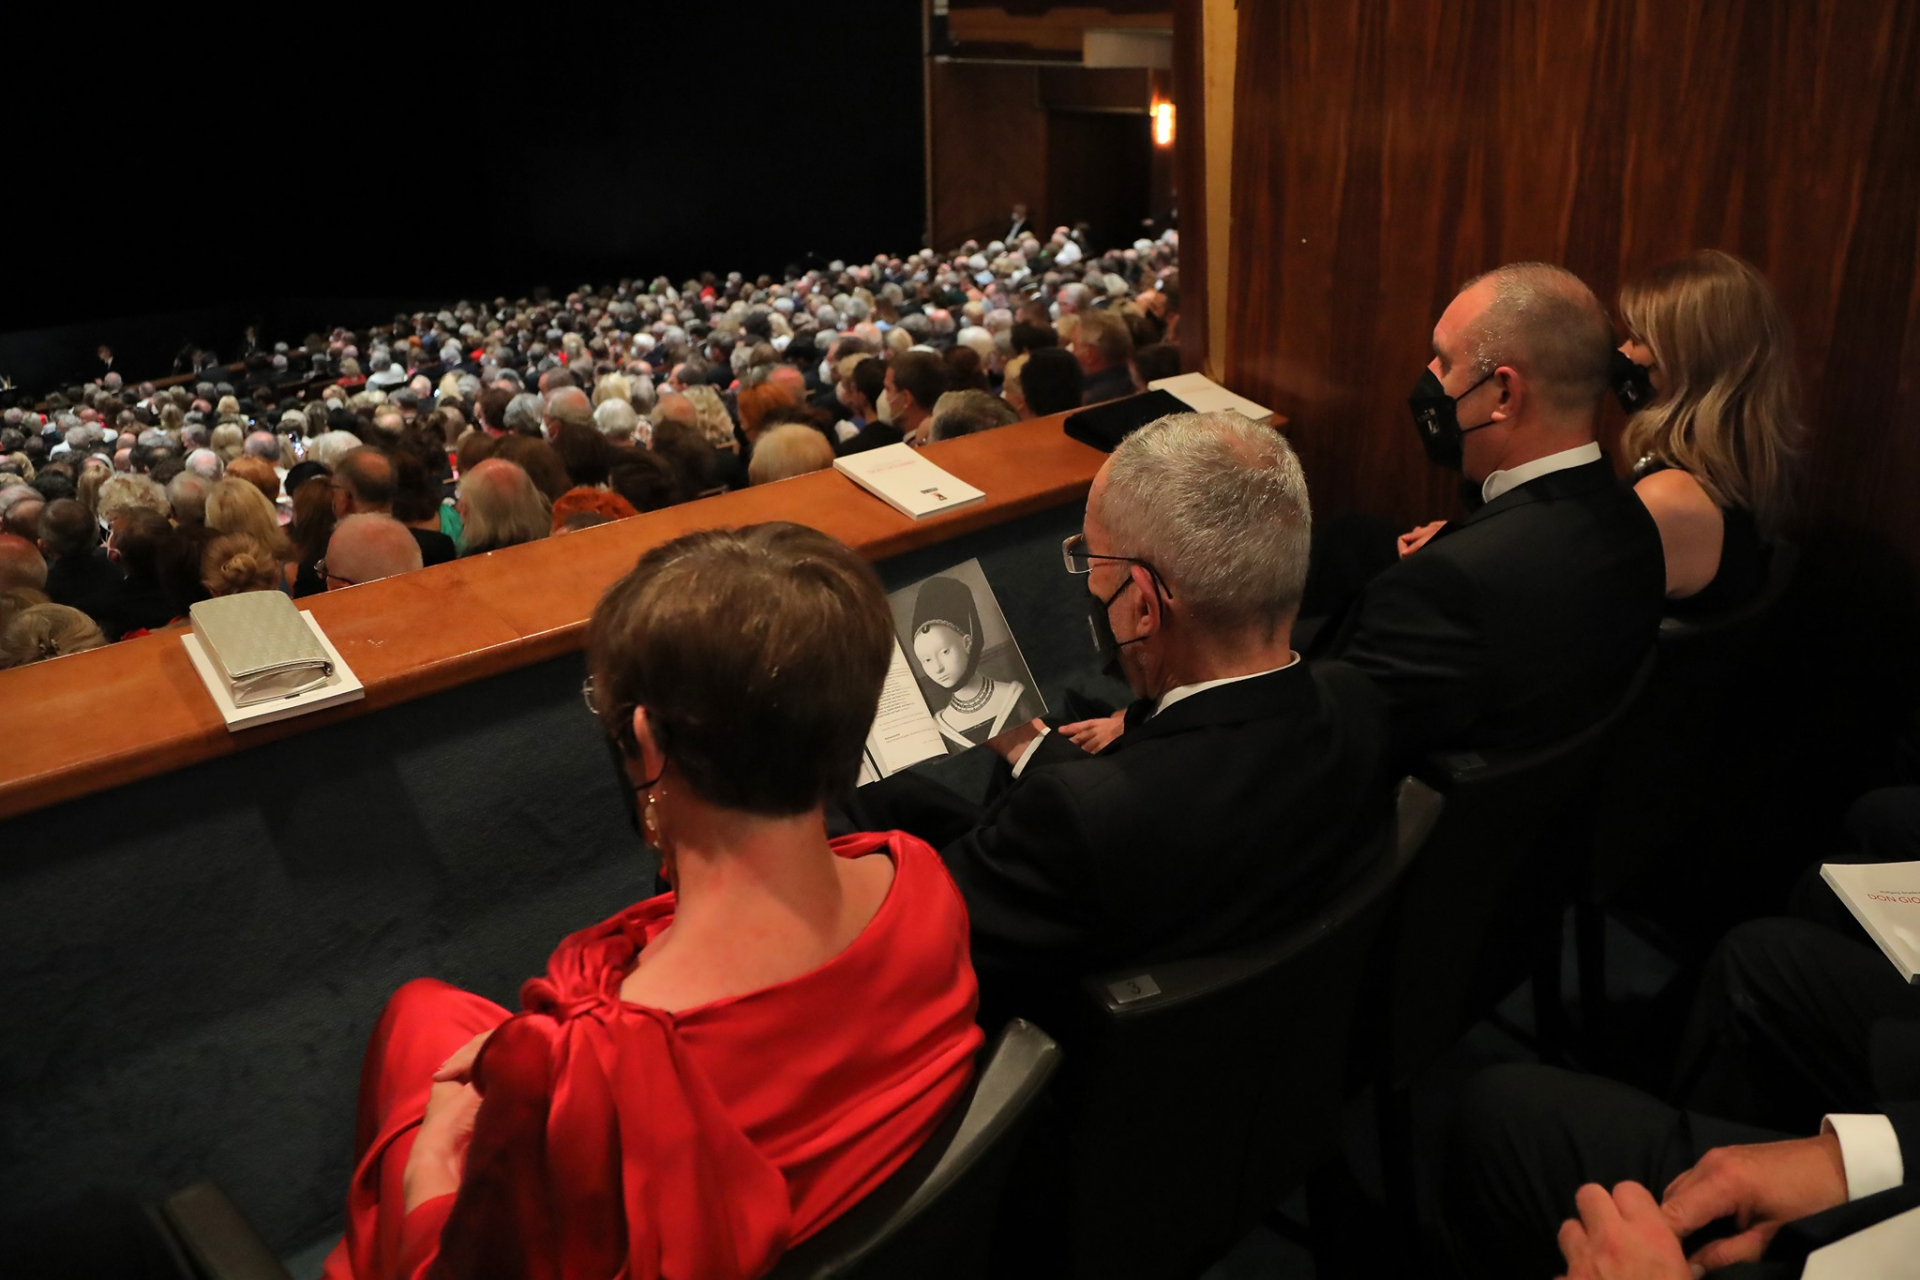 Радев и съпругата му присъстваха на премиерата на операта „Дон Жуан“ в Залцбург ВИДЕО